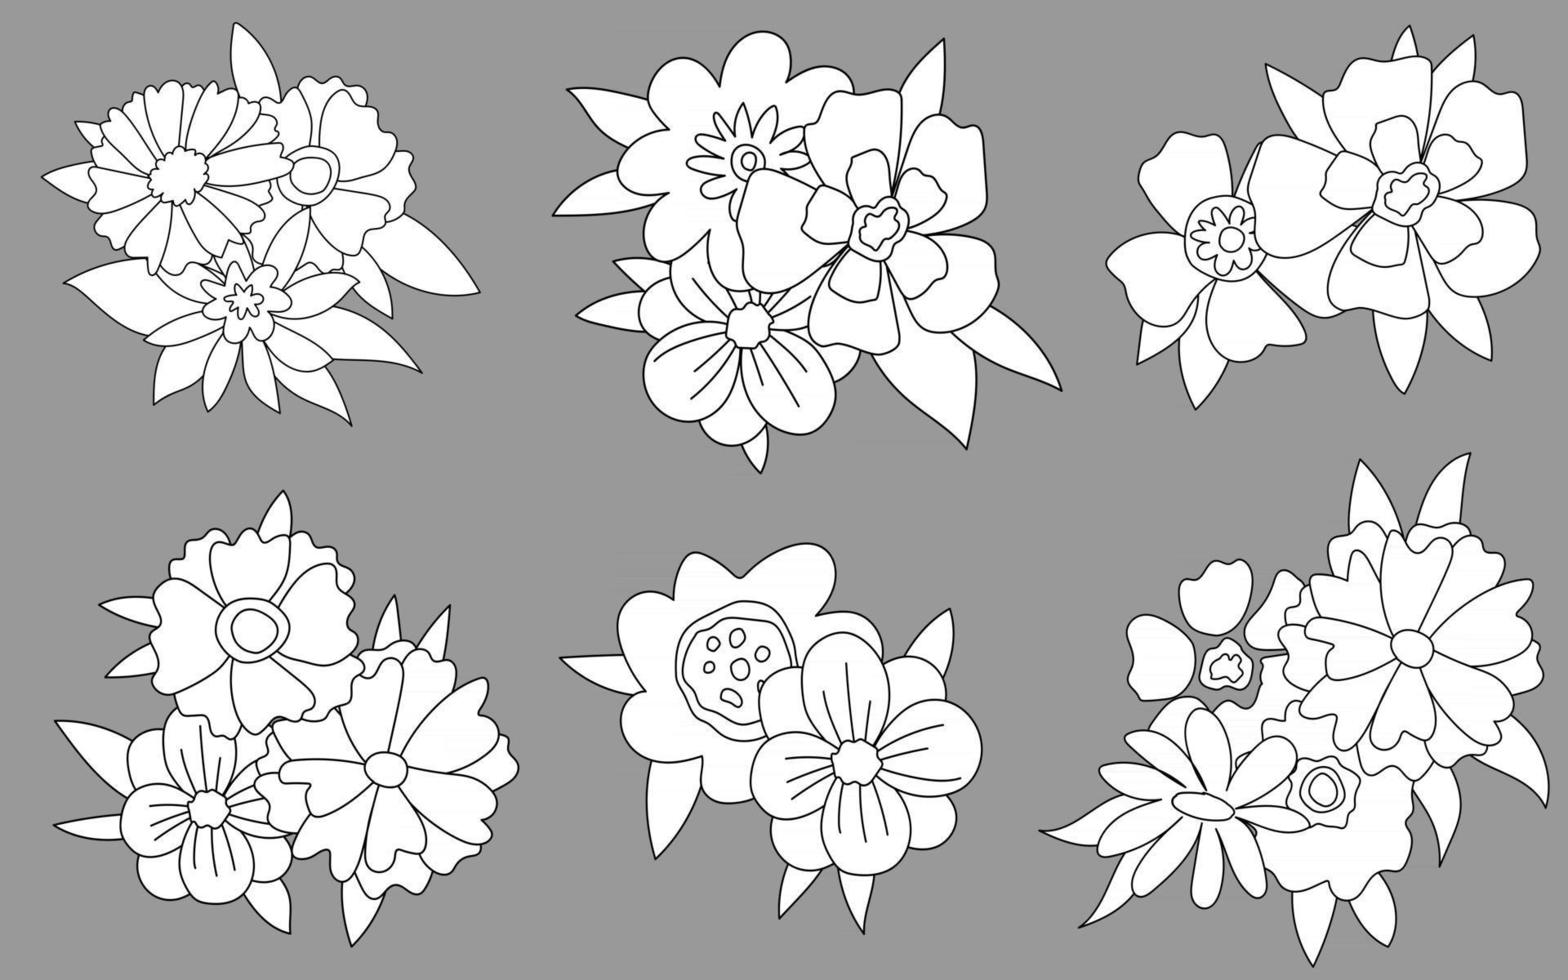 Doodles fofos flores linha preto e branco conjunto de ilustrações vetoriais desenhadas à mão esboço para tatuagem vetor